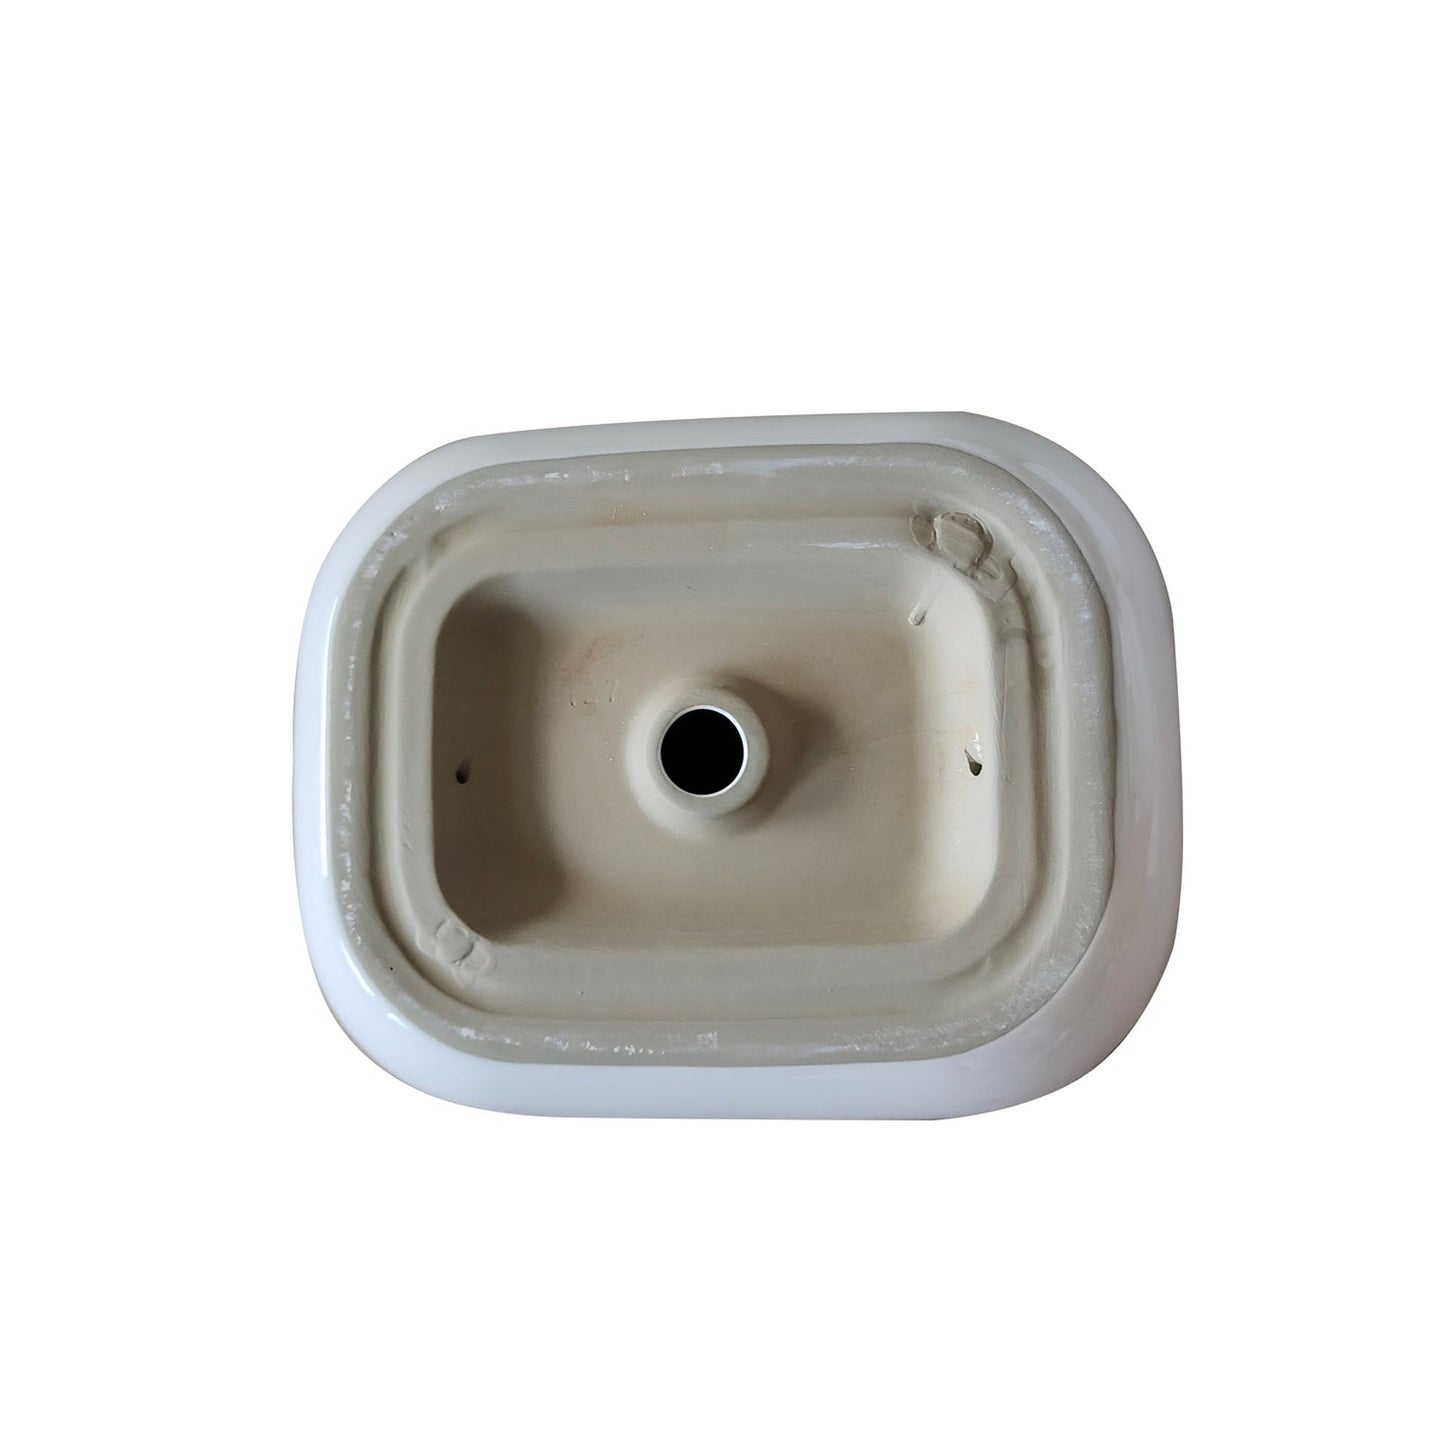 Altair Tahoe 20" Oval White Ceramic Bathroom Vanity Vessel Sink